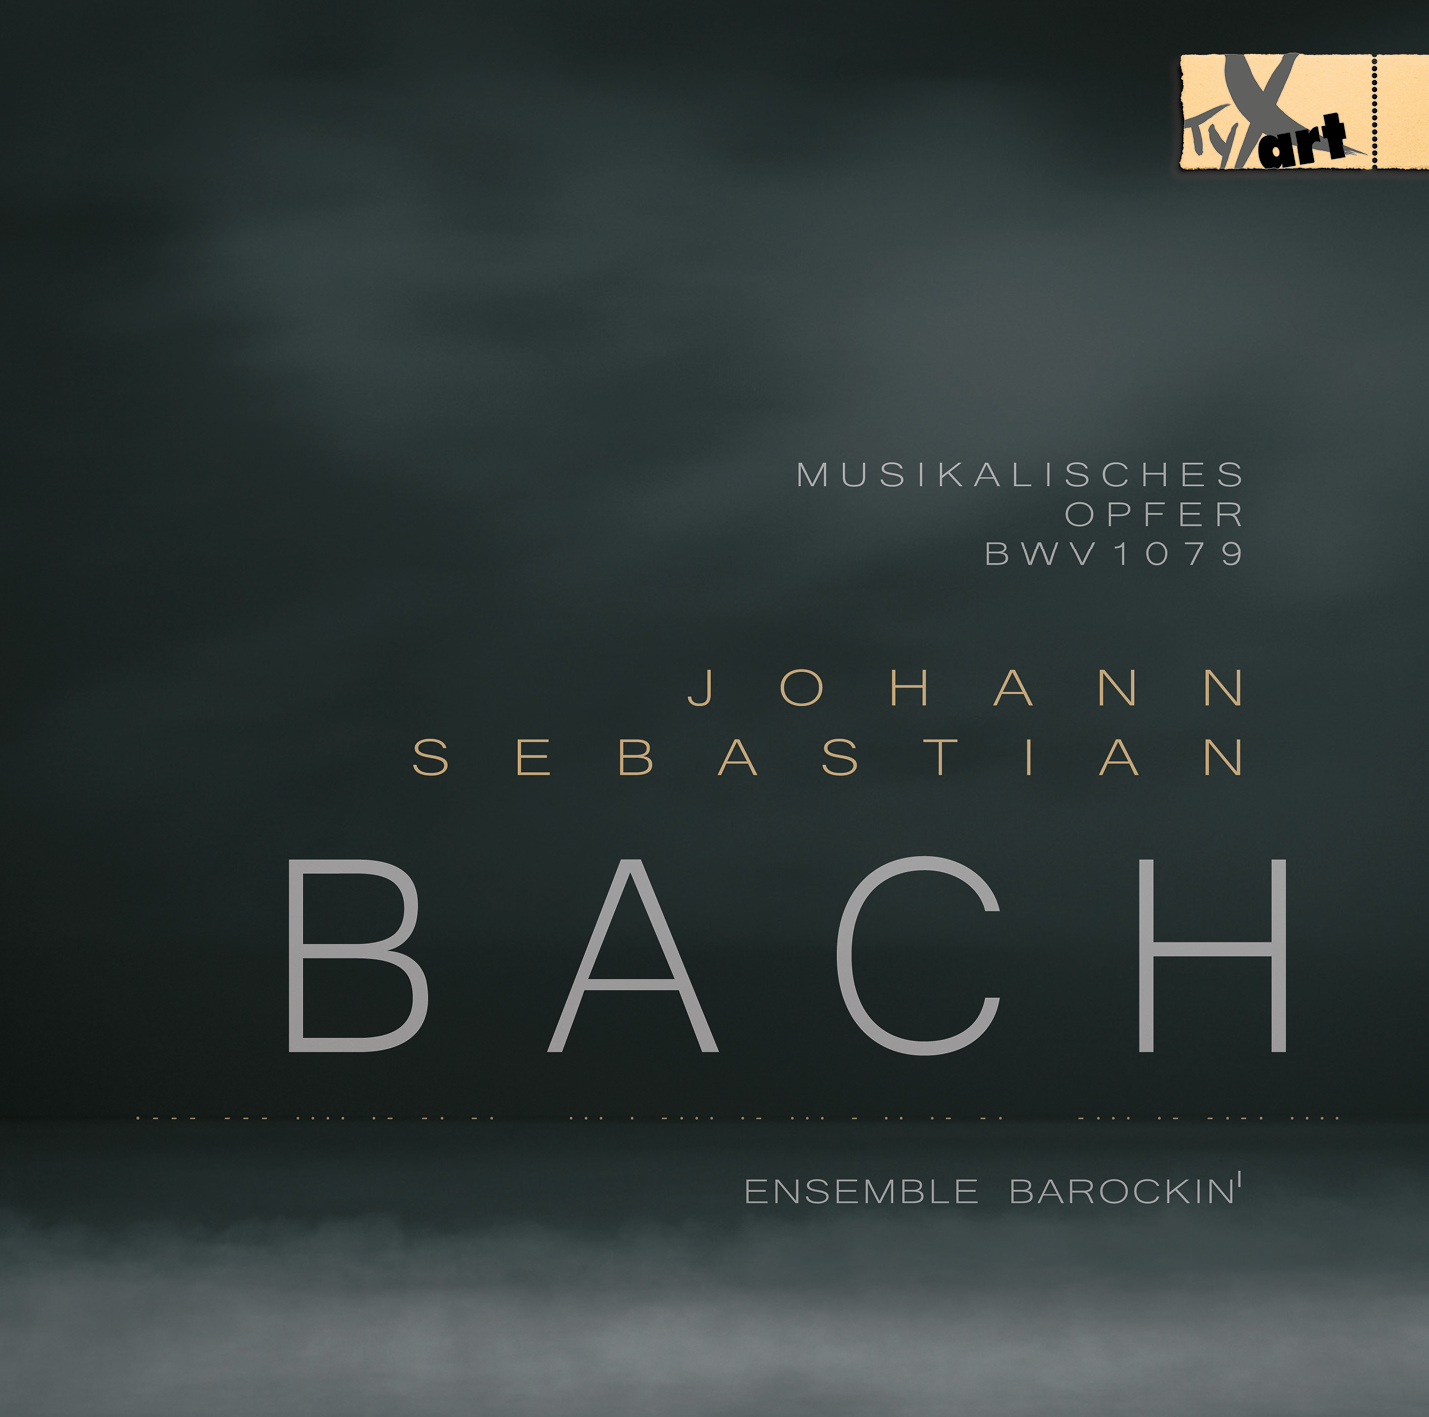 Johann Sebastian Bach - Musikalisches Opfer - Ensemble Barockin'